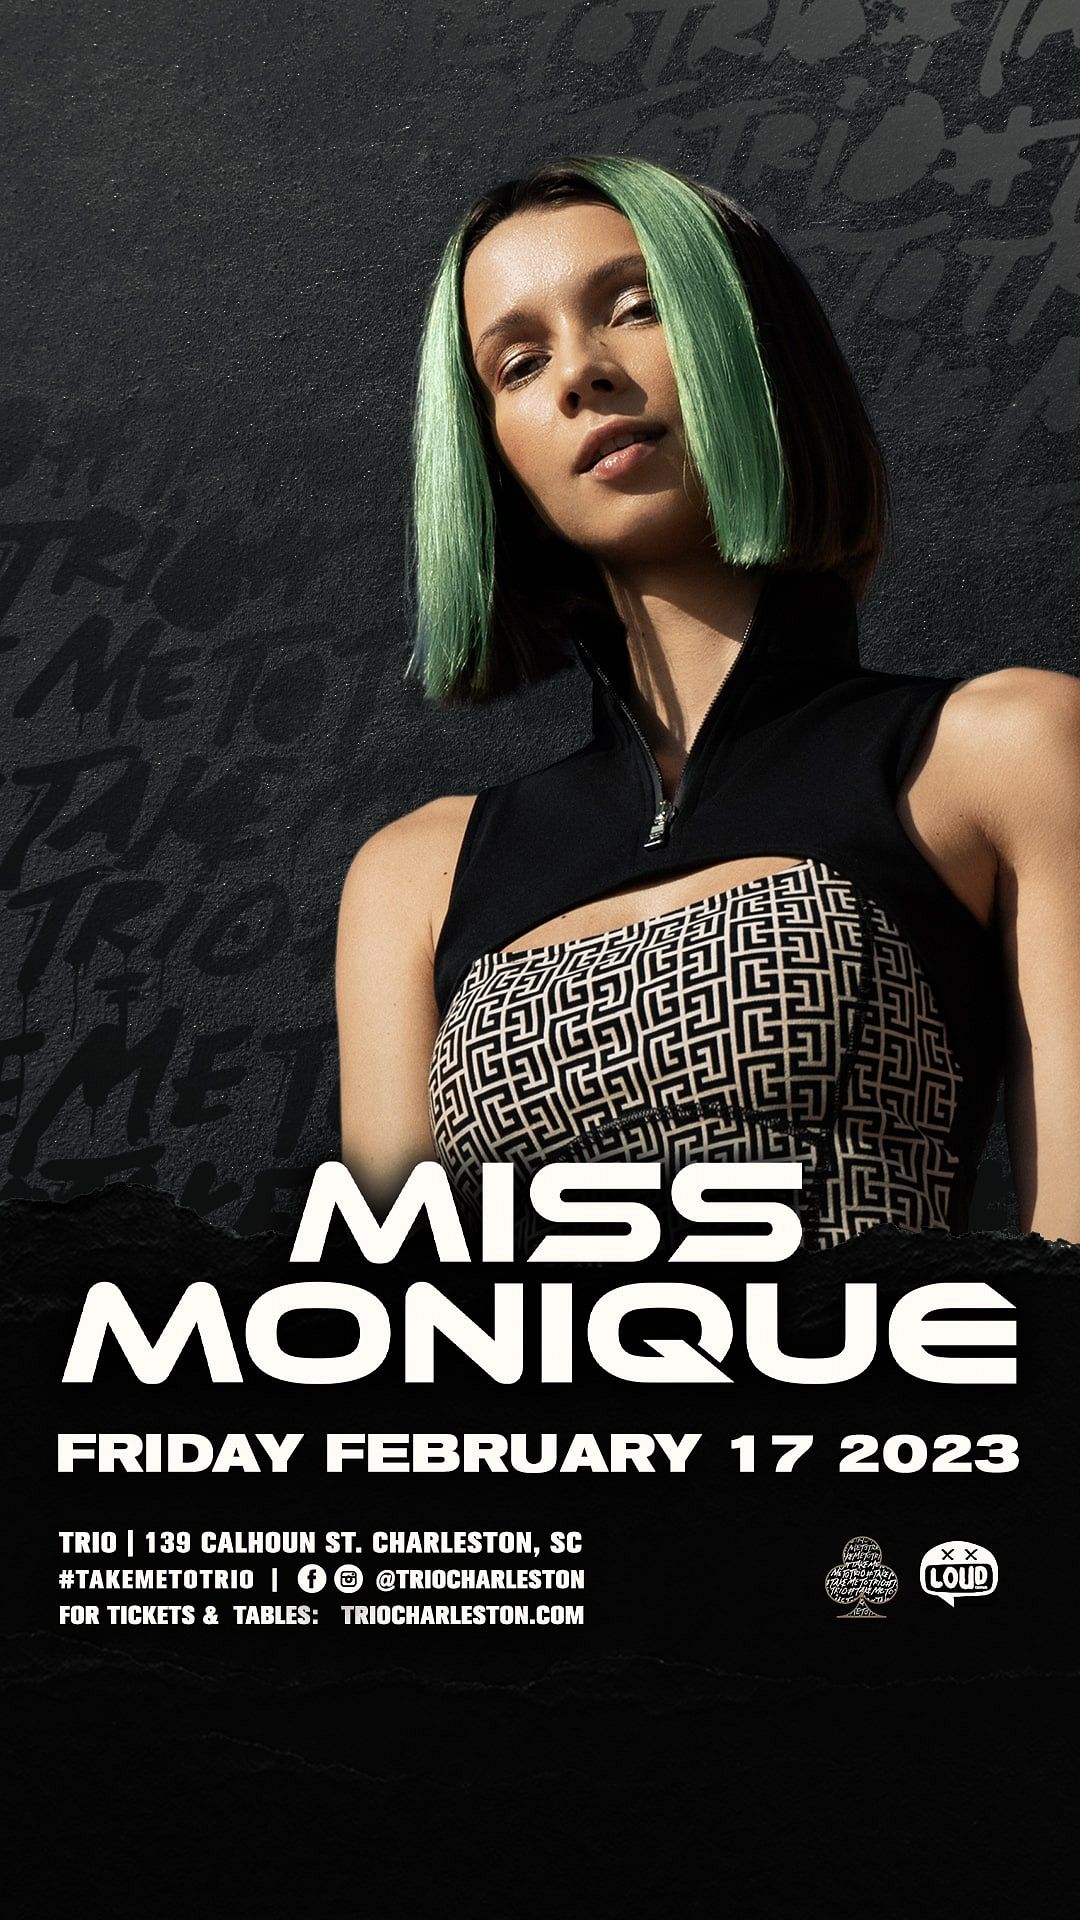 miss monique tour dates